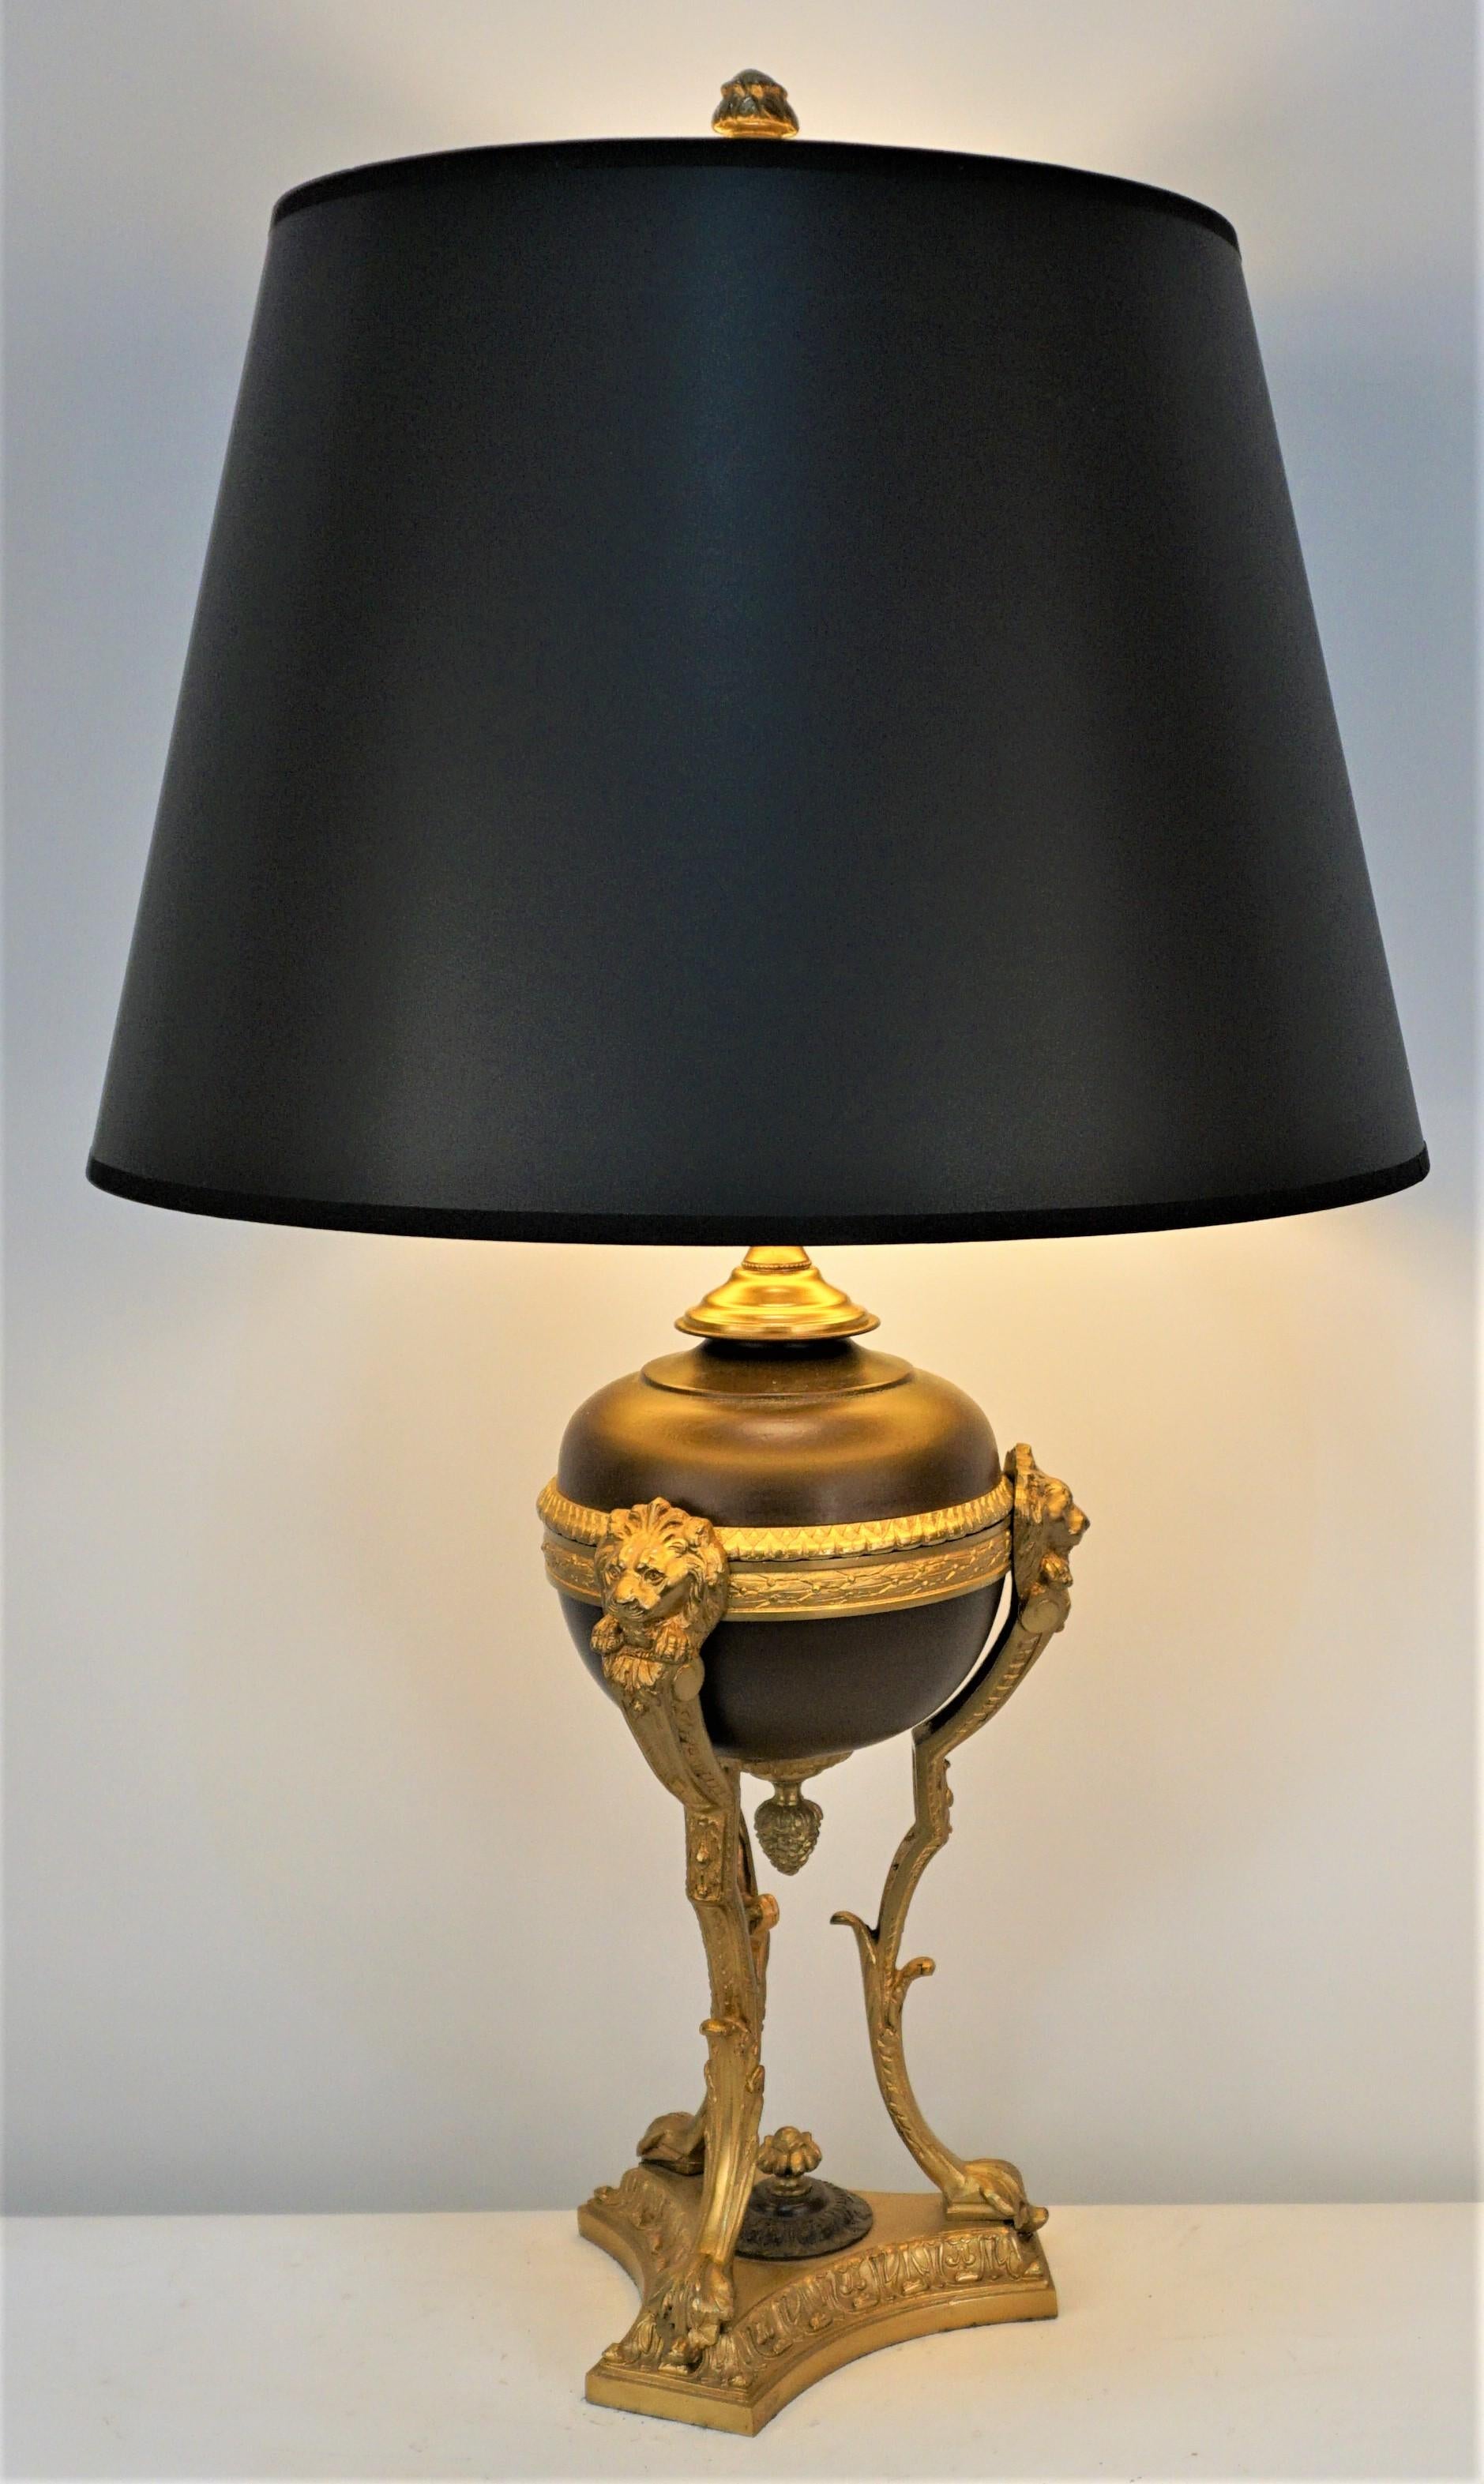 Französischer Empire-Stil Elektrifizierte Bronze und brauner Lack auf Bronze-Öllampe mit dreifachem Sockel und Seidenlampenschirm.